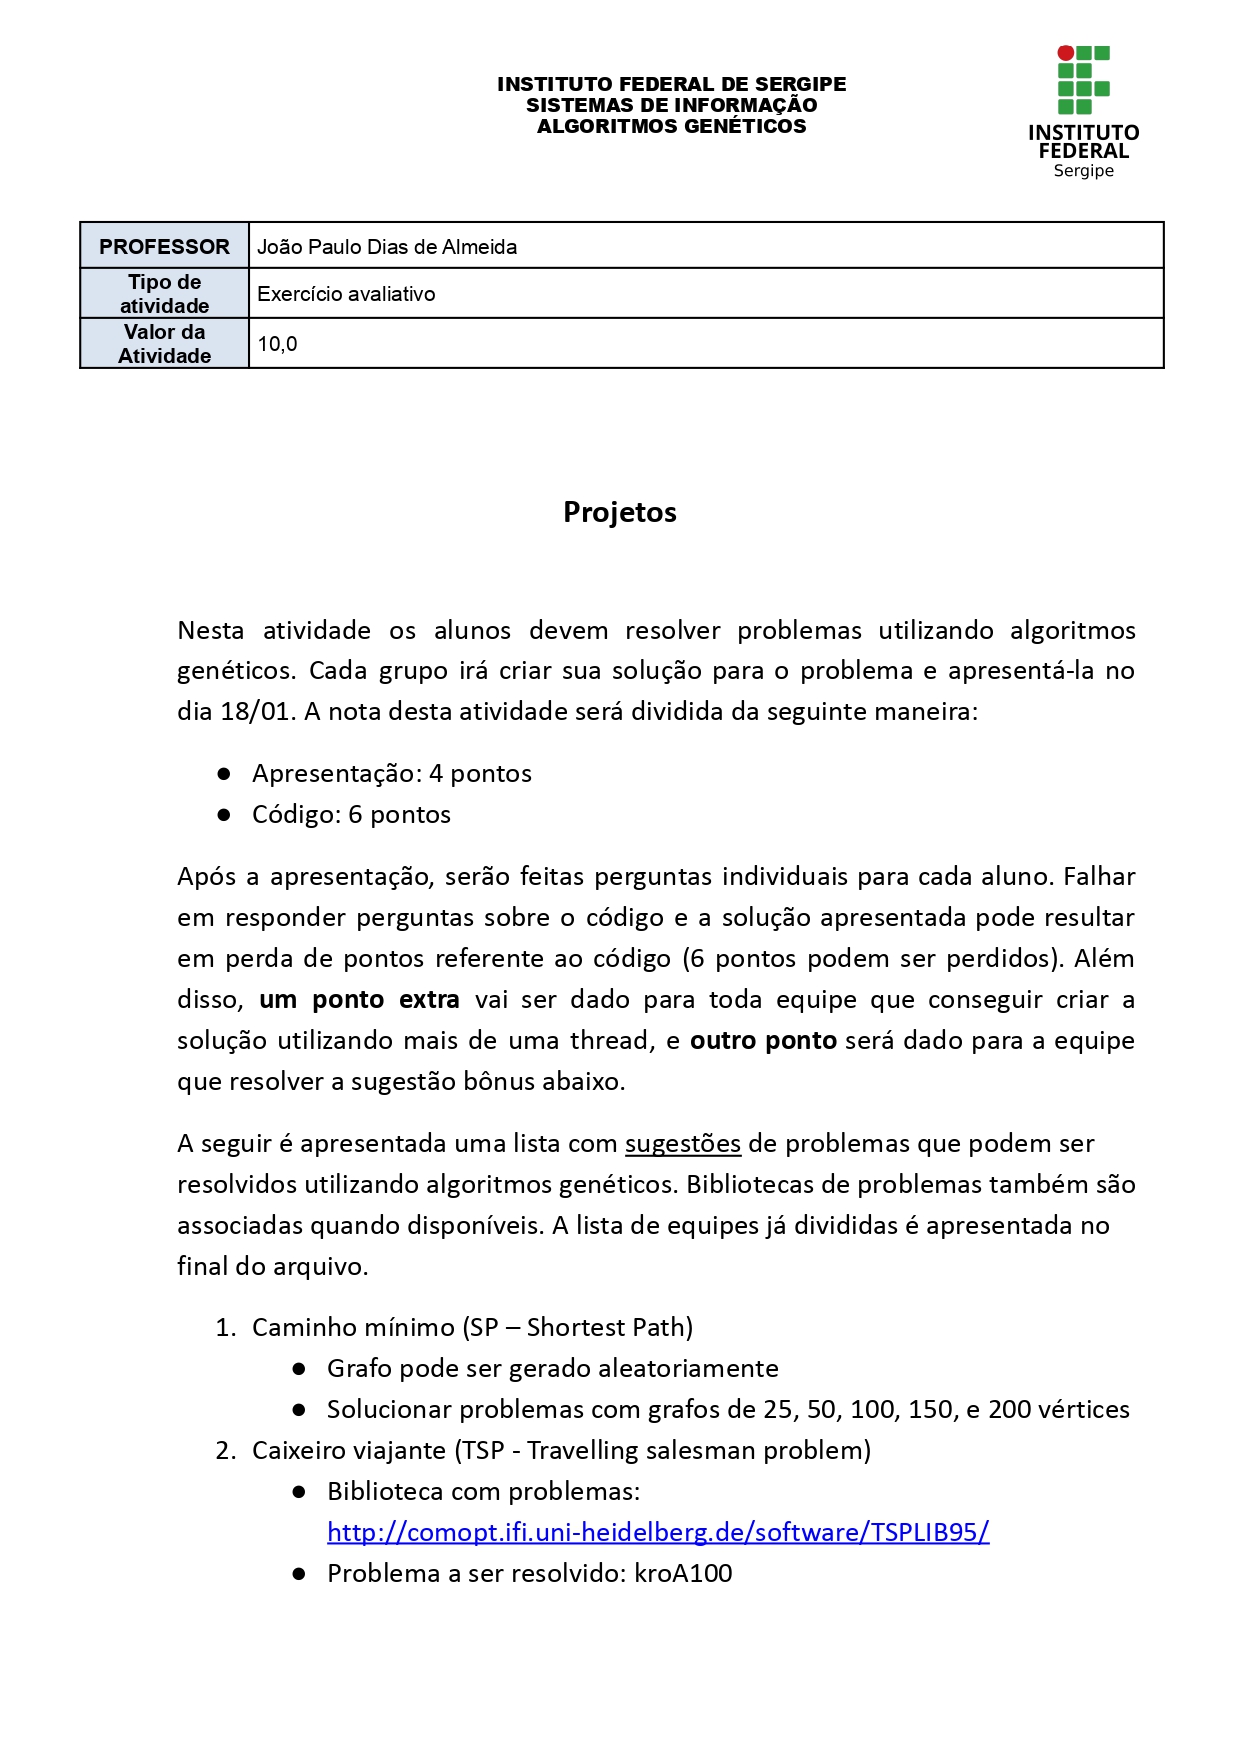 Projetos_page-0001.jpg